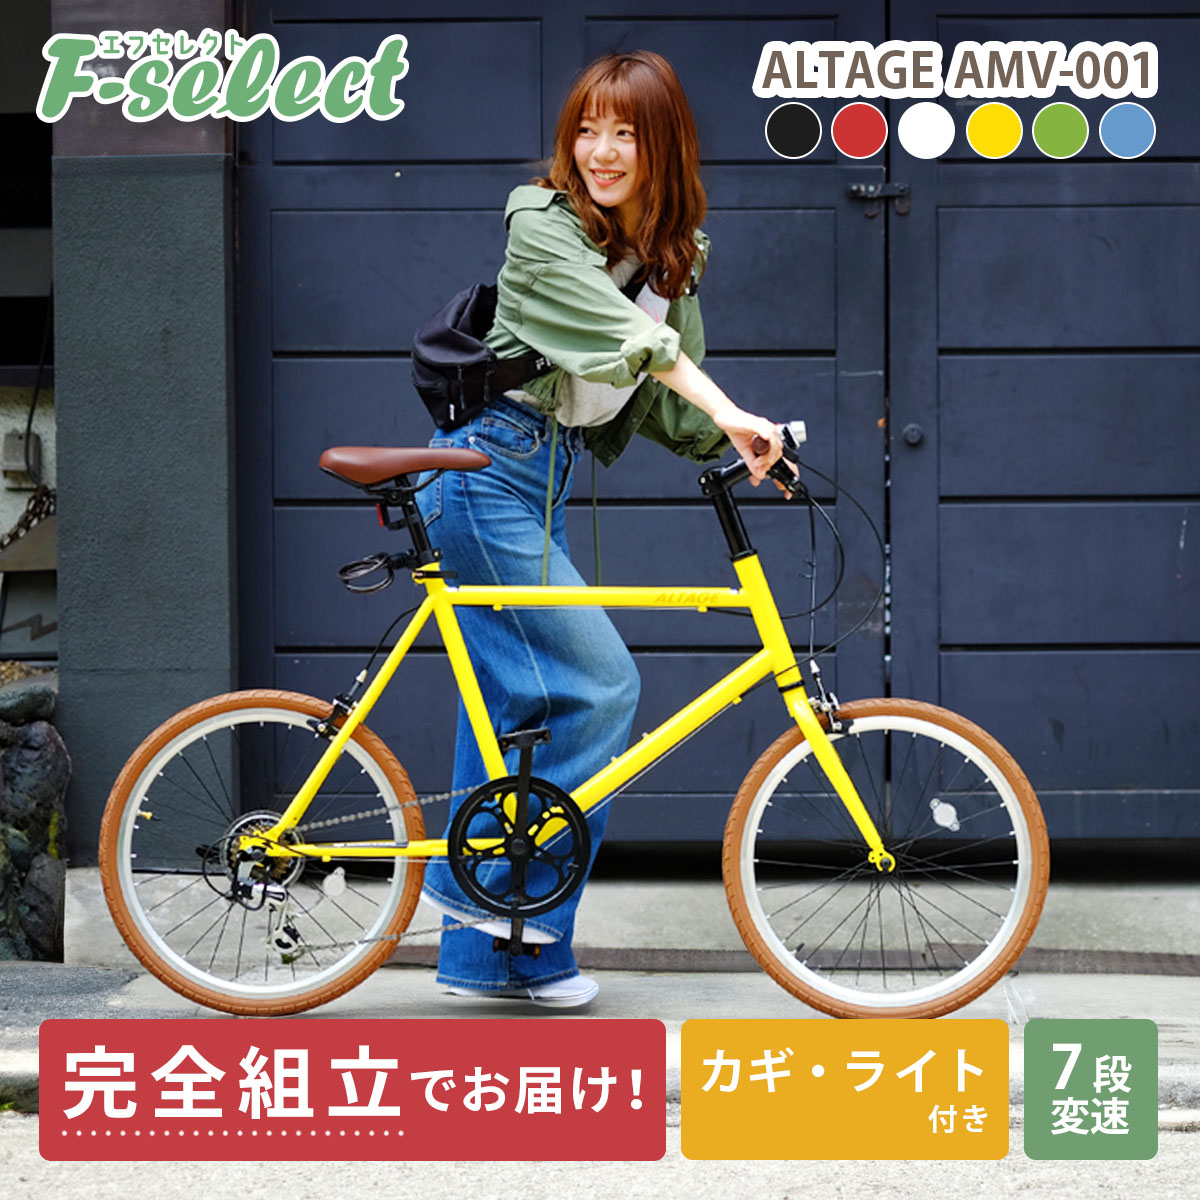  мини велосипед малого диаметра велосипед 20 дюймовый конечный продукт отгрузка / класть распределение возможность Shimano 7 ступени переключение скоростей LED свет * ключ легкий arte -jiALTAGE AMV-001